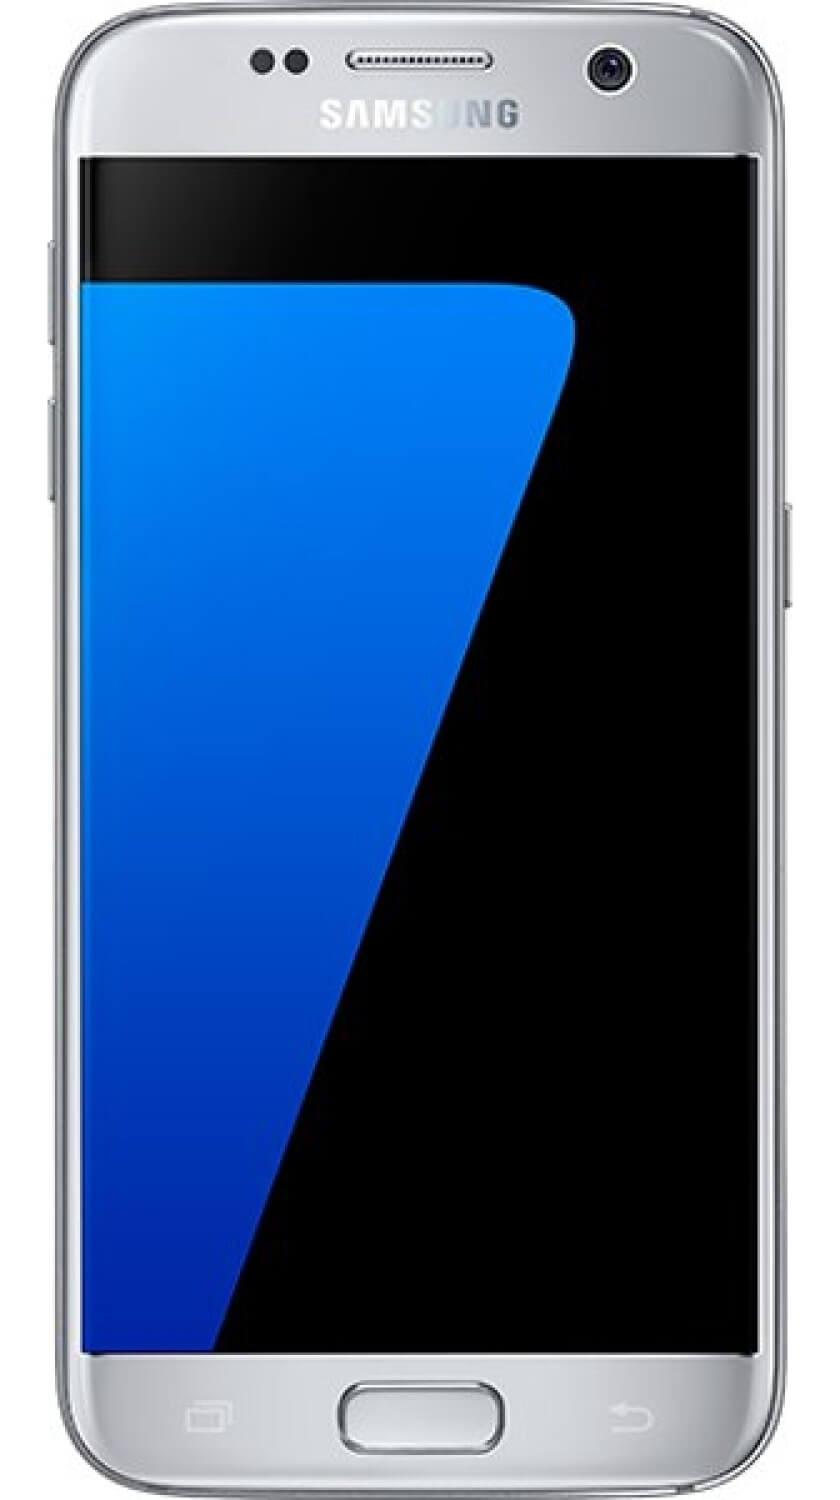 Как выглядит серебристый Samsung Galaxy S7? Фото.